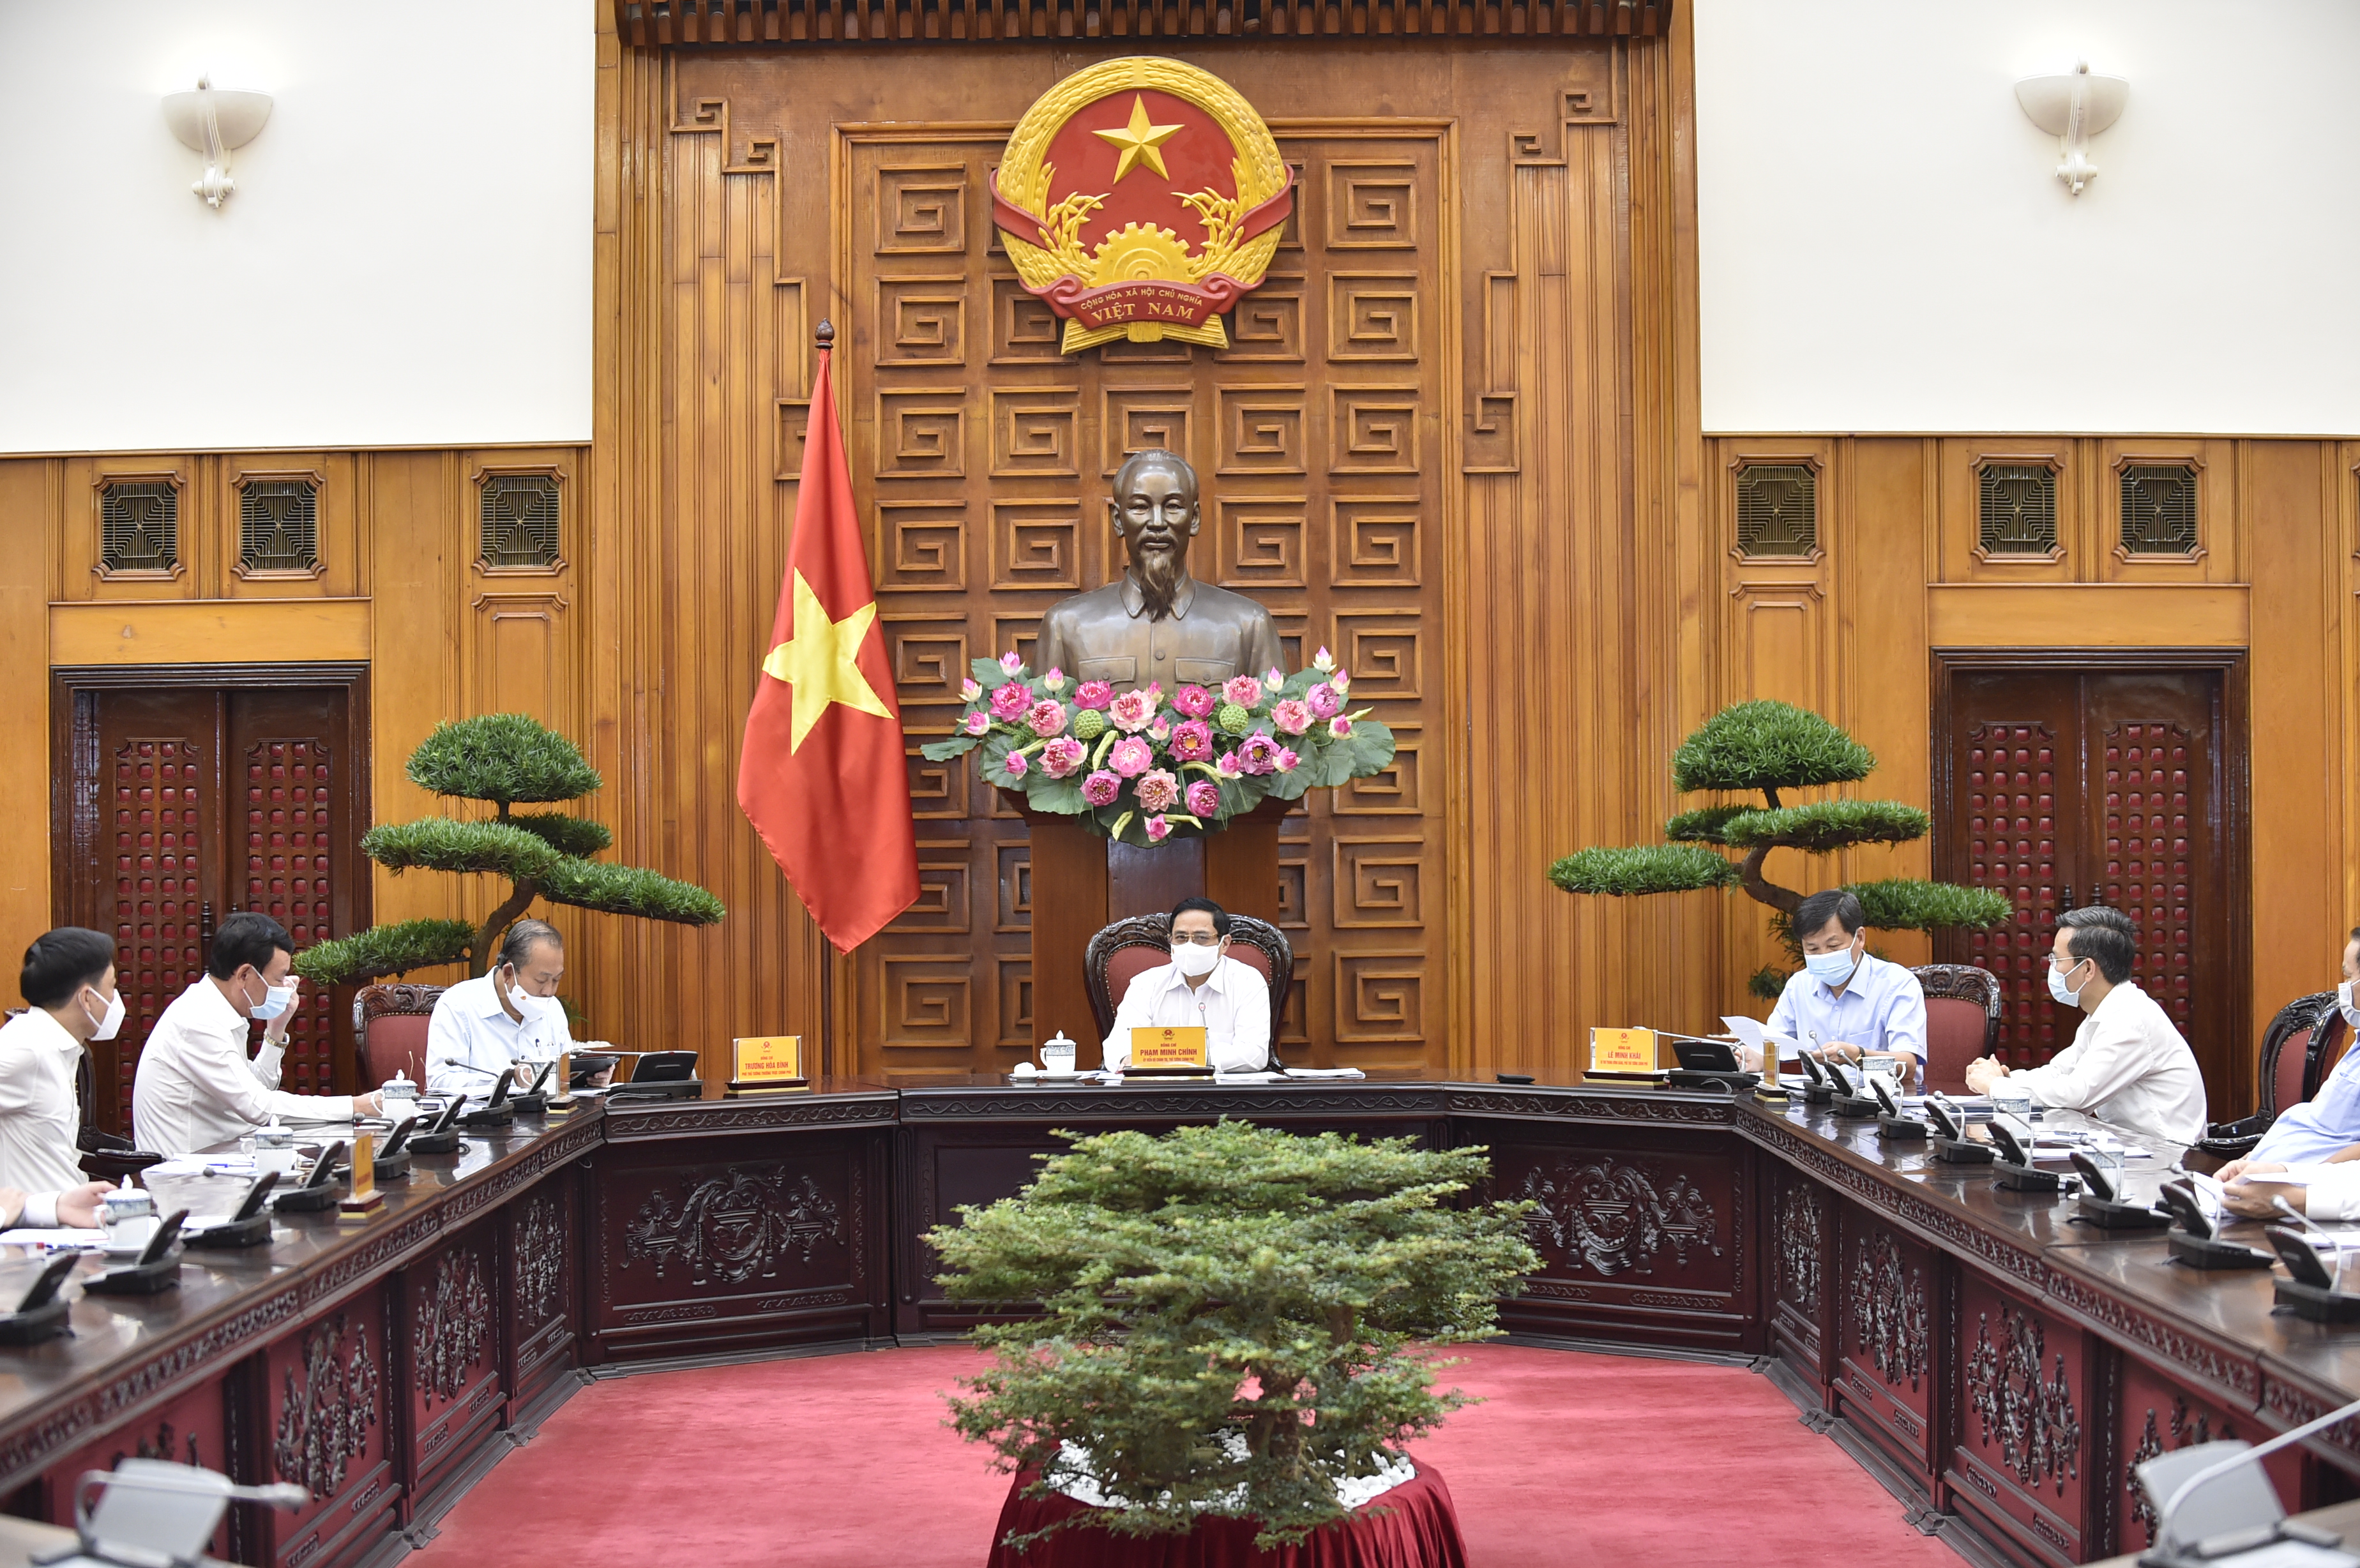 Thủ tướng Phạm Minh Chính: Thanh tra để phòng ngừa, răn đe, xử lý công bằng trước pháp luật, phục vụ phát triển